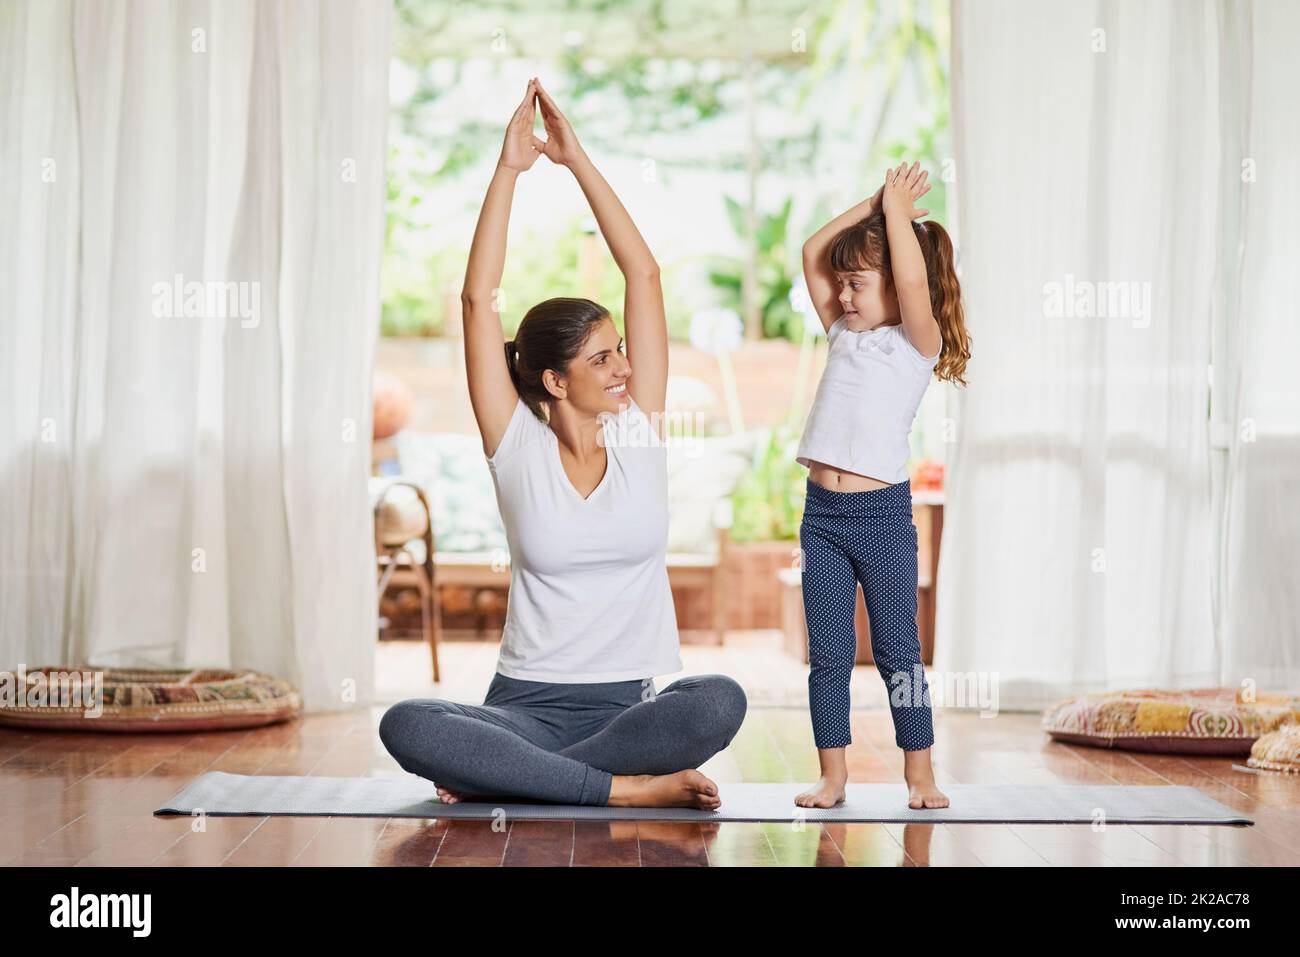 Youre arrivare mio figlio. Shot di una giovane madre e figlia focalizzata che fanno una posa yoga con le loro braccia sollevate sopra la testa. Foto Stock